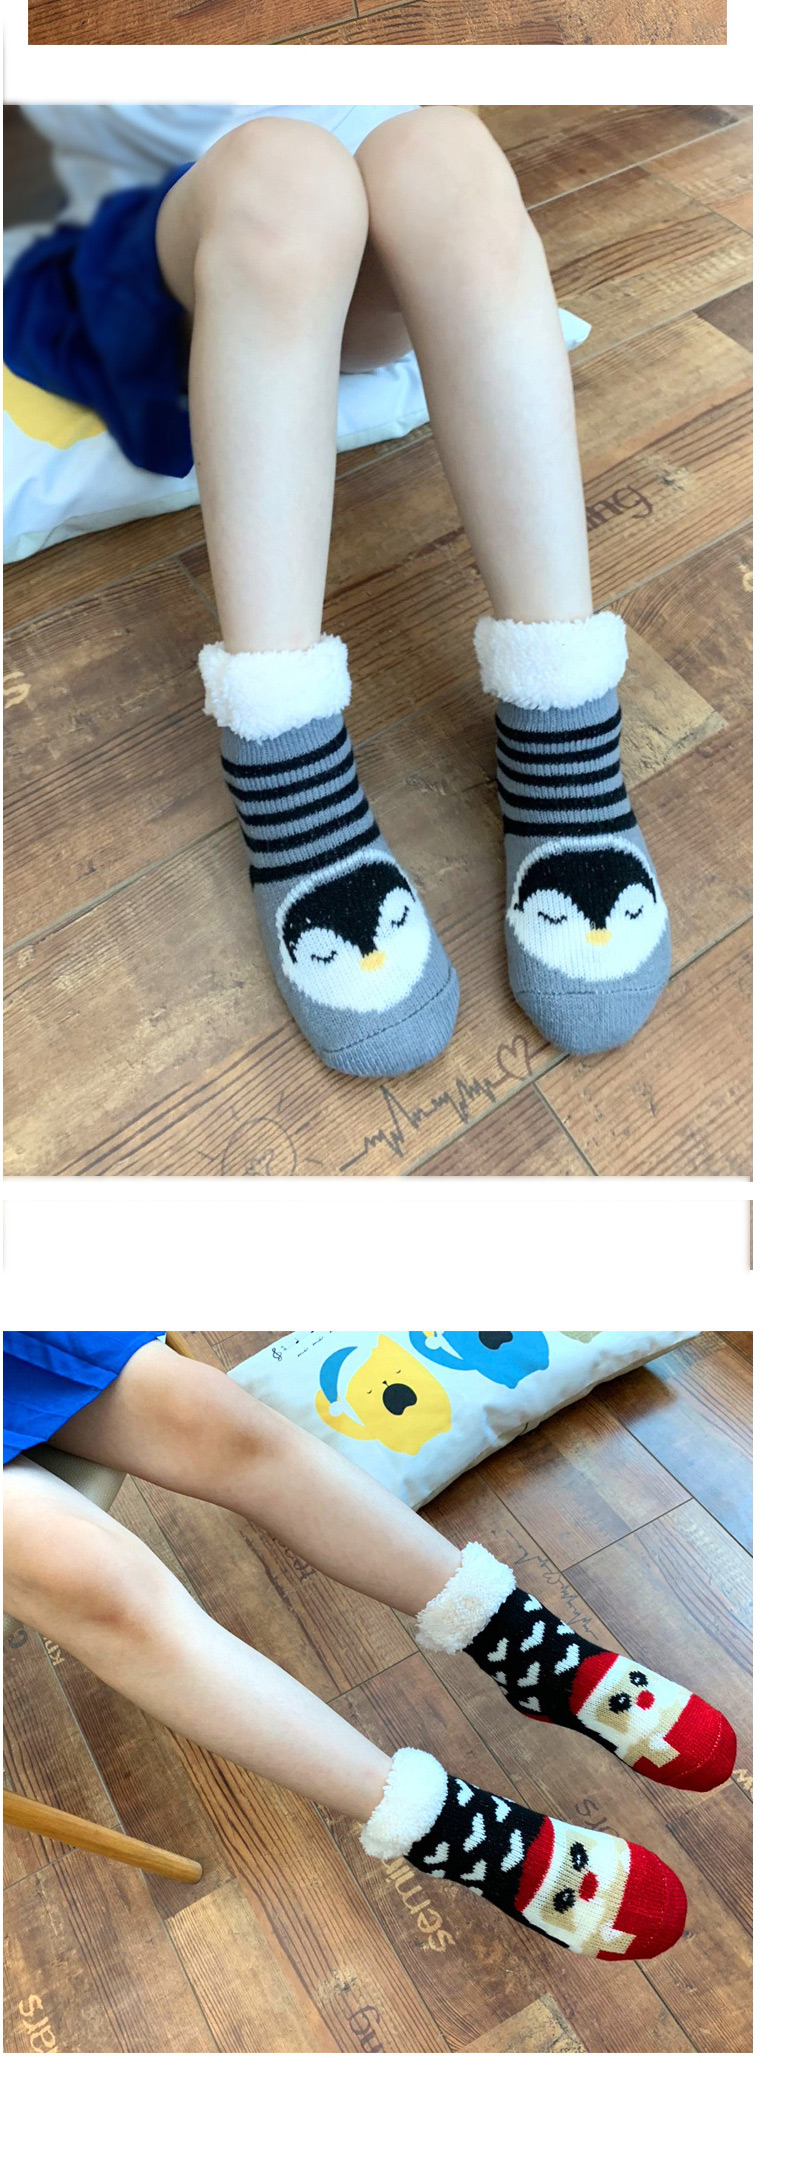 Fashion Bunny Christmas Thick Printed Baby Non-slip Floor Socks,Fashion Socks